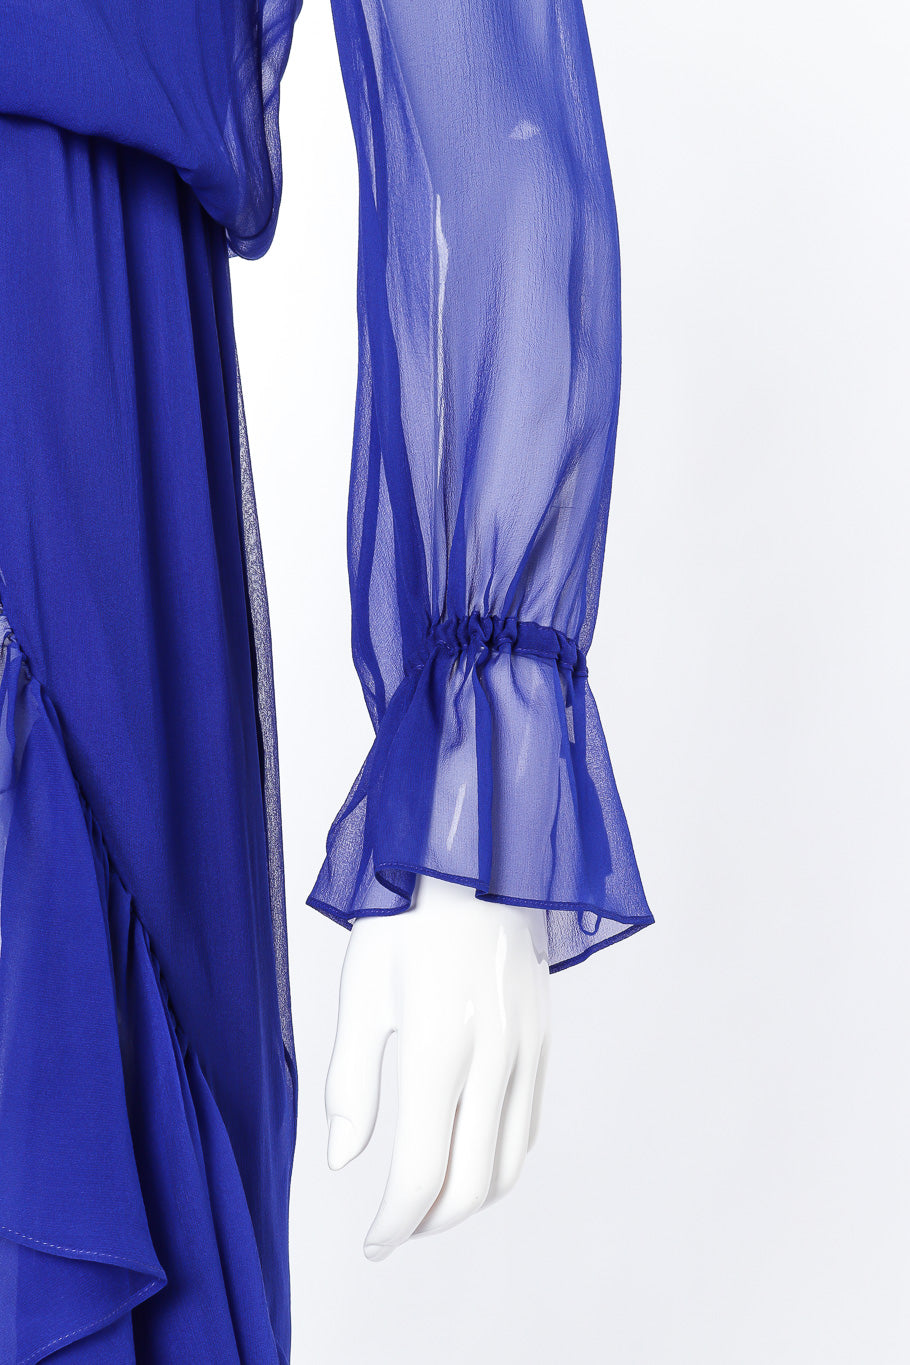 Saint Laurent 2020 Fall Sheer Silk Ruffle Dress sleeve closeup @Recessla